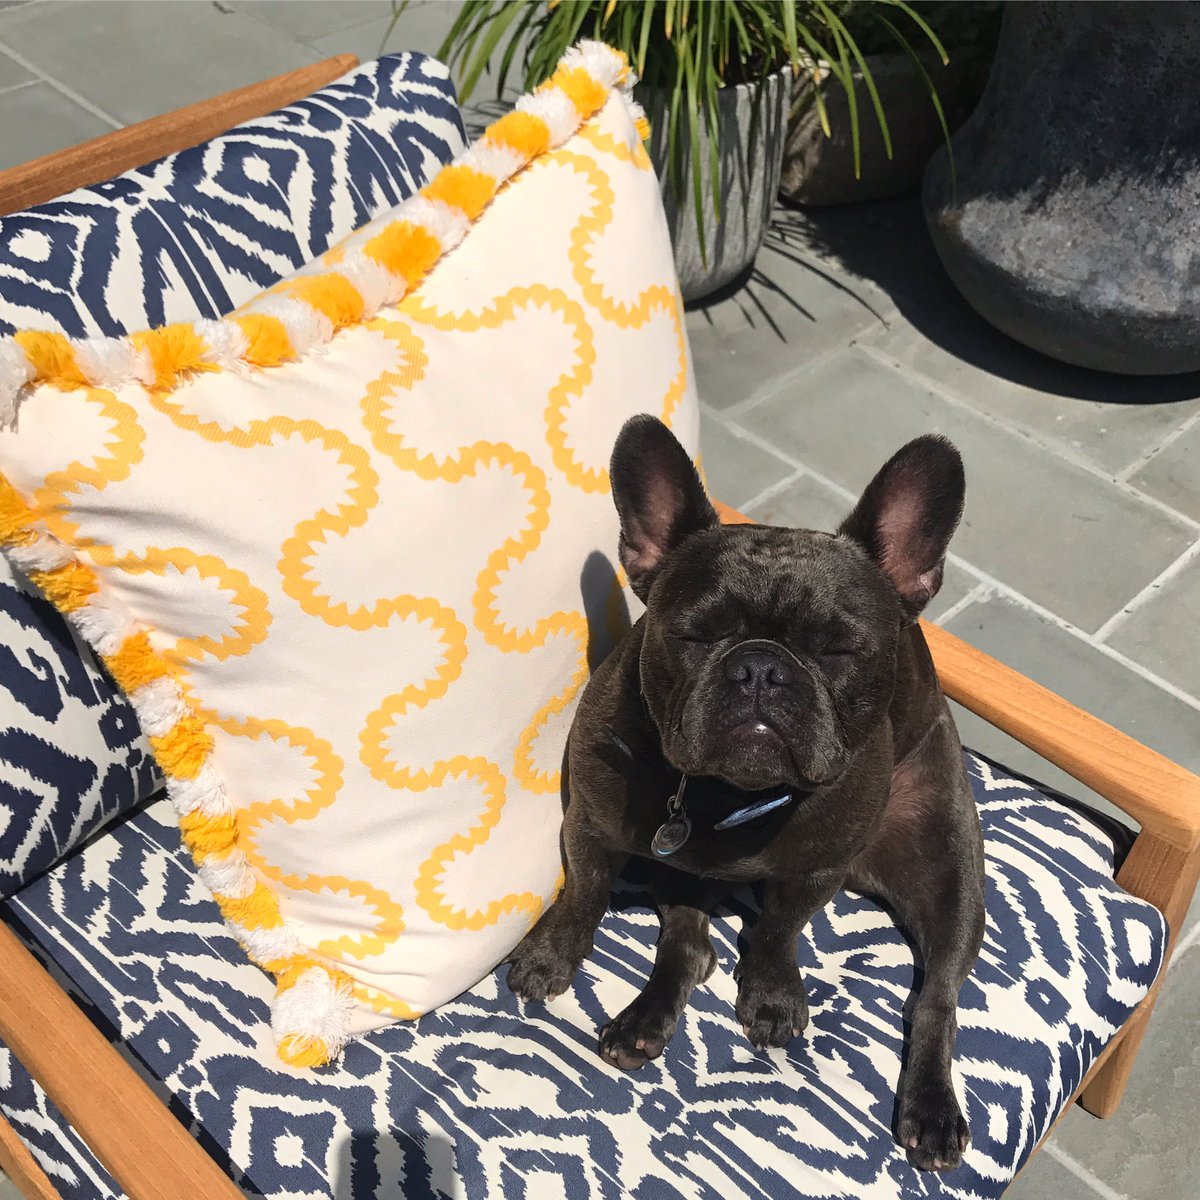 Pepper sure is enjoying the summer sunshine! ☀️☀️☀️#Sunbathing #SummerFeels #SundayFunday https://t.co/rmuuCIFx37